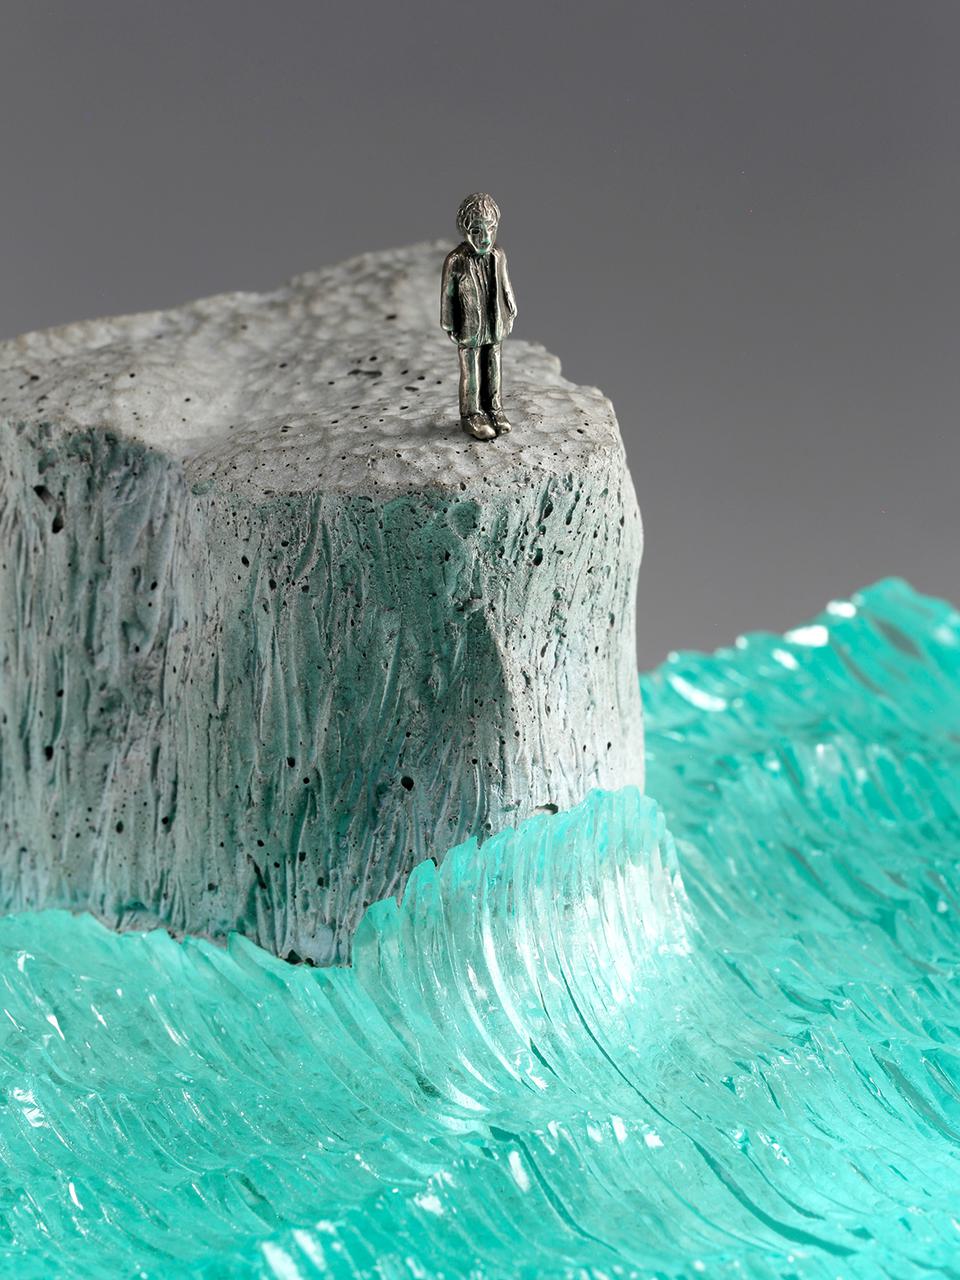 Ben Young Marine Glass Sculpture